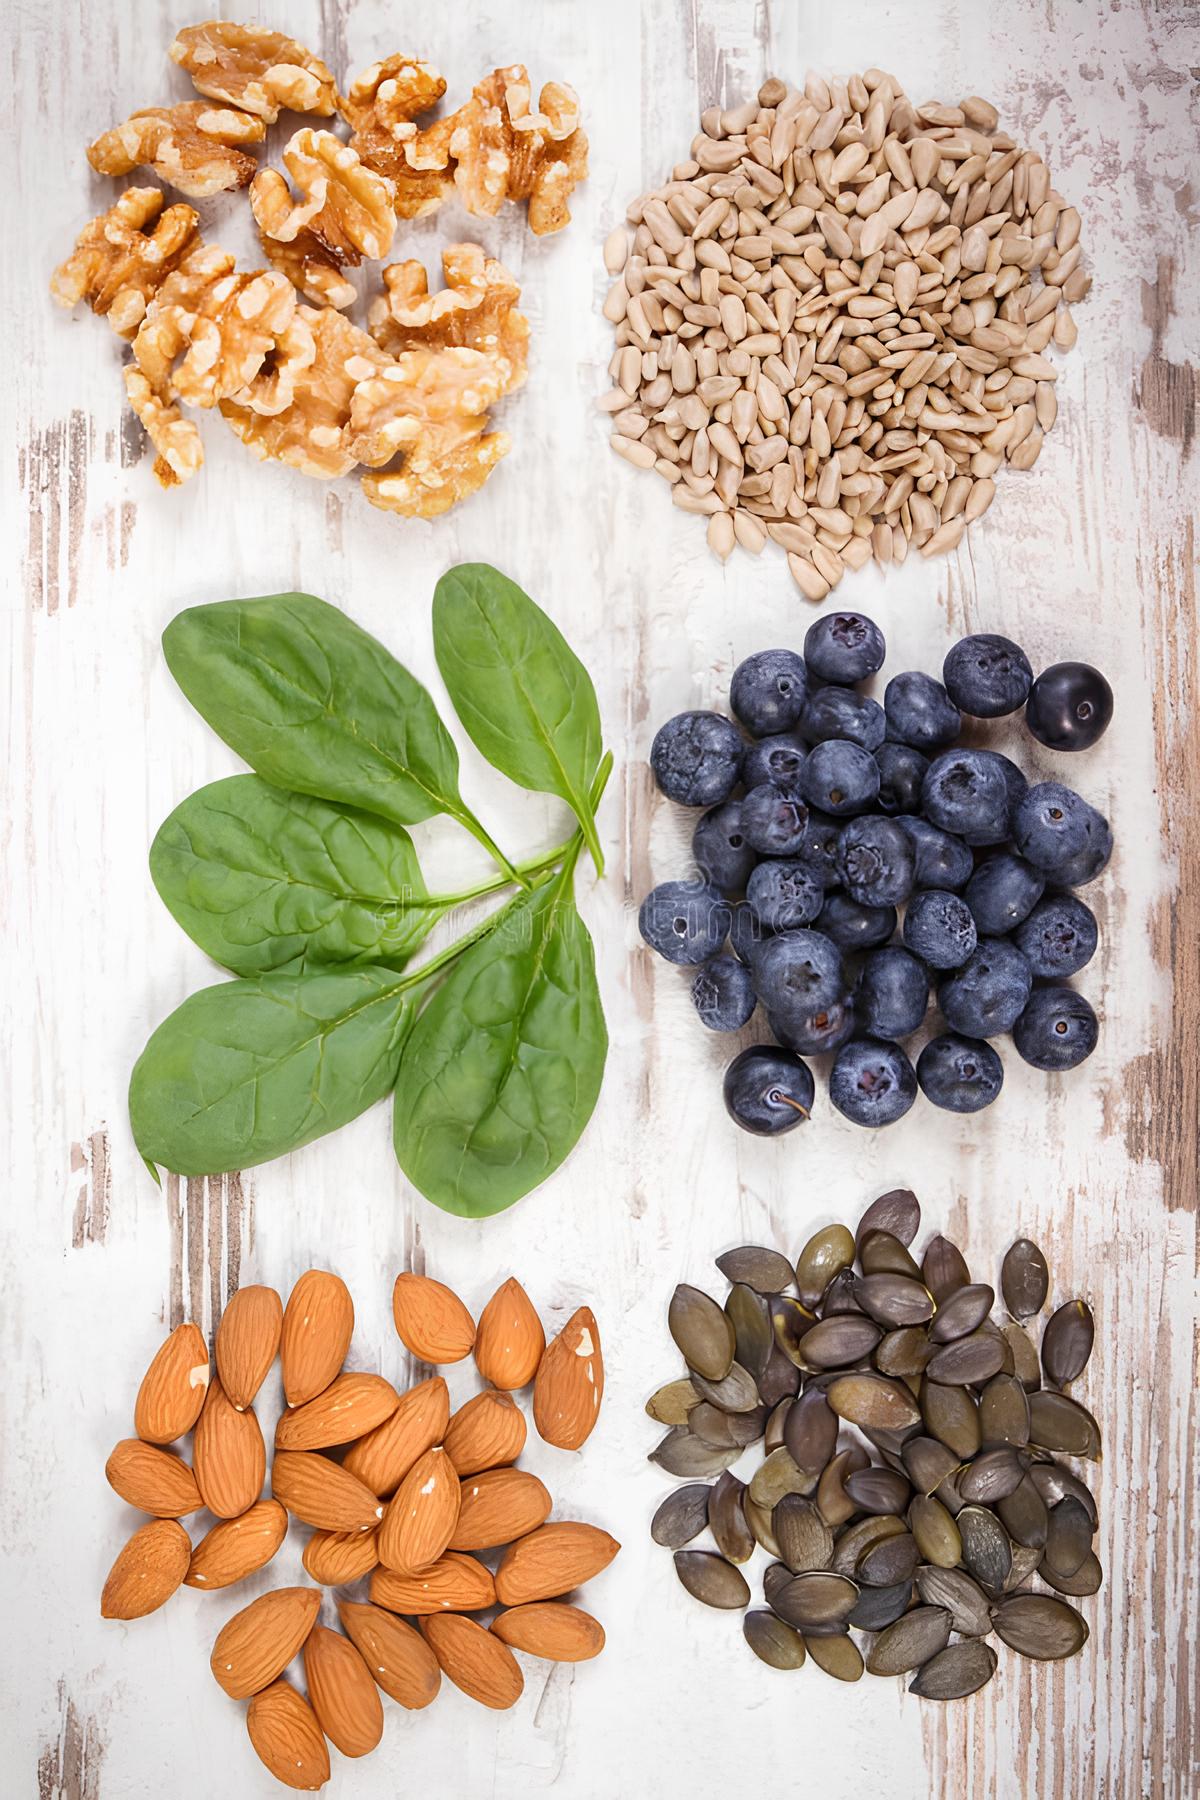 Billede af sund mad herunder bær, kerner, nødder og spinat